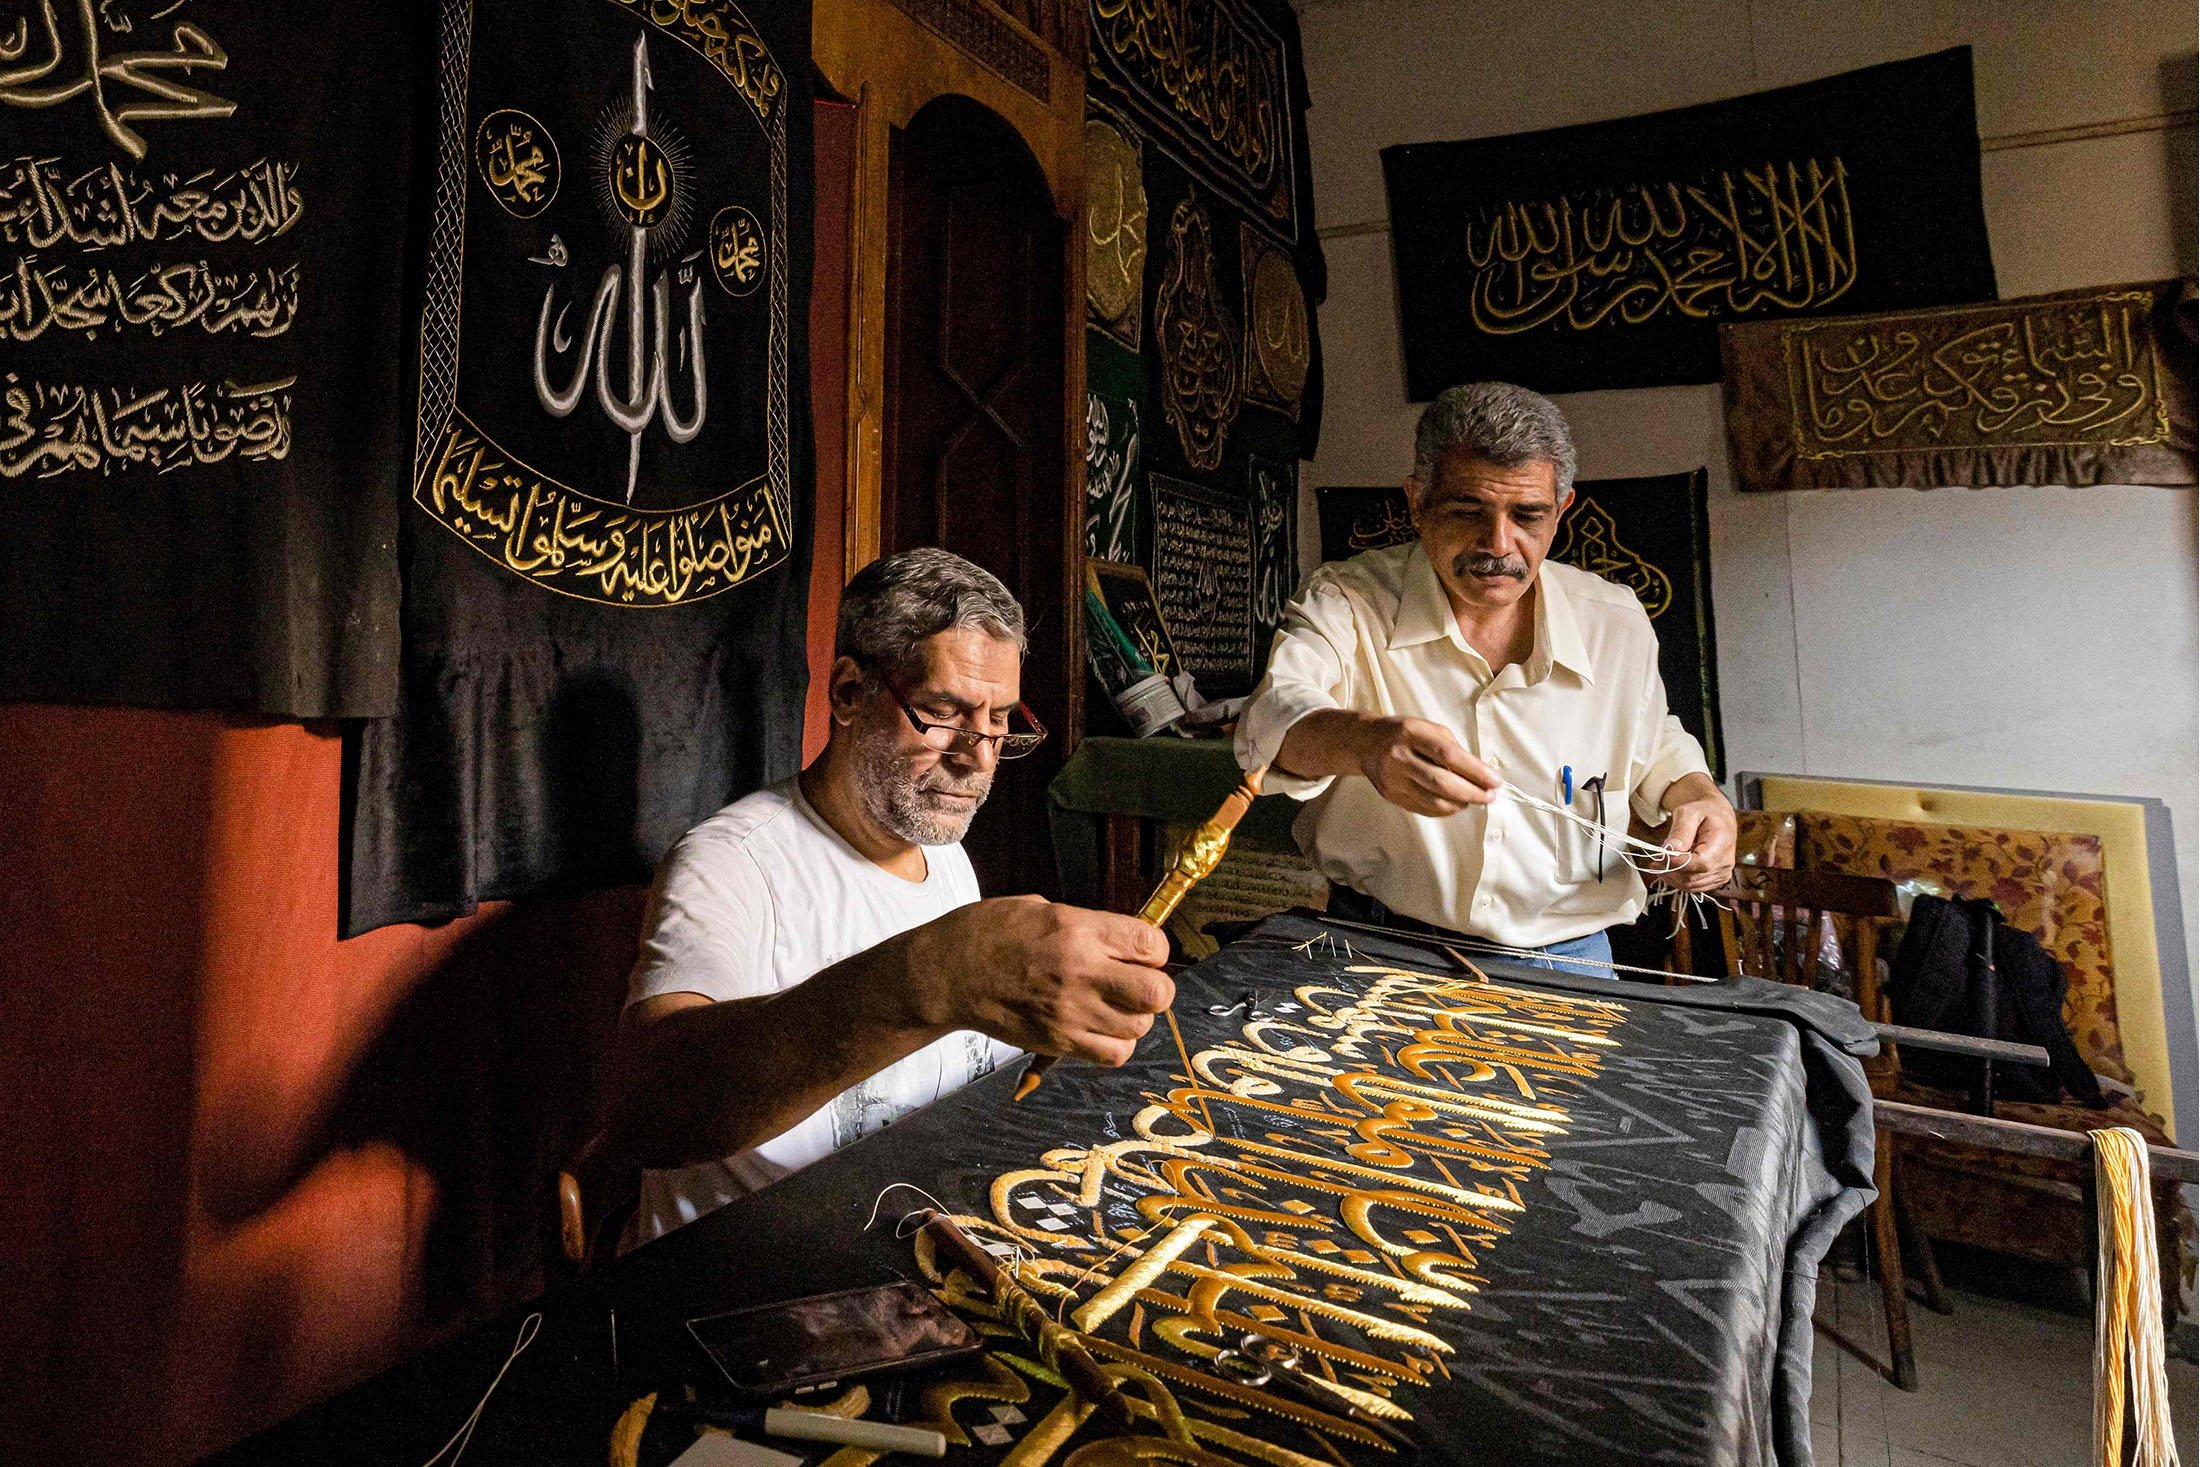 Penjahit Mesir Ahmed Othman el-Kassabgy (kanan) mengawasi saat karyawan lain (kiri) menjahit dengan benang emas sebuah ayat dari Al-Qur'an ke tirai replika untuk dijual sebagai suvenir bagi wisatawan yang berkunjung ke Kairo, Mesir, 15 Juni 2022. (AFP Foto)